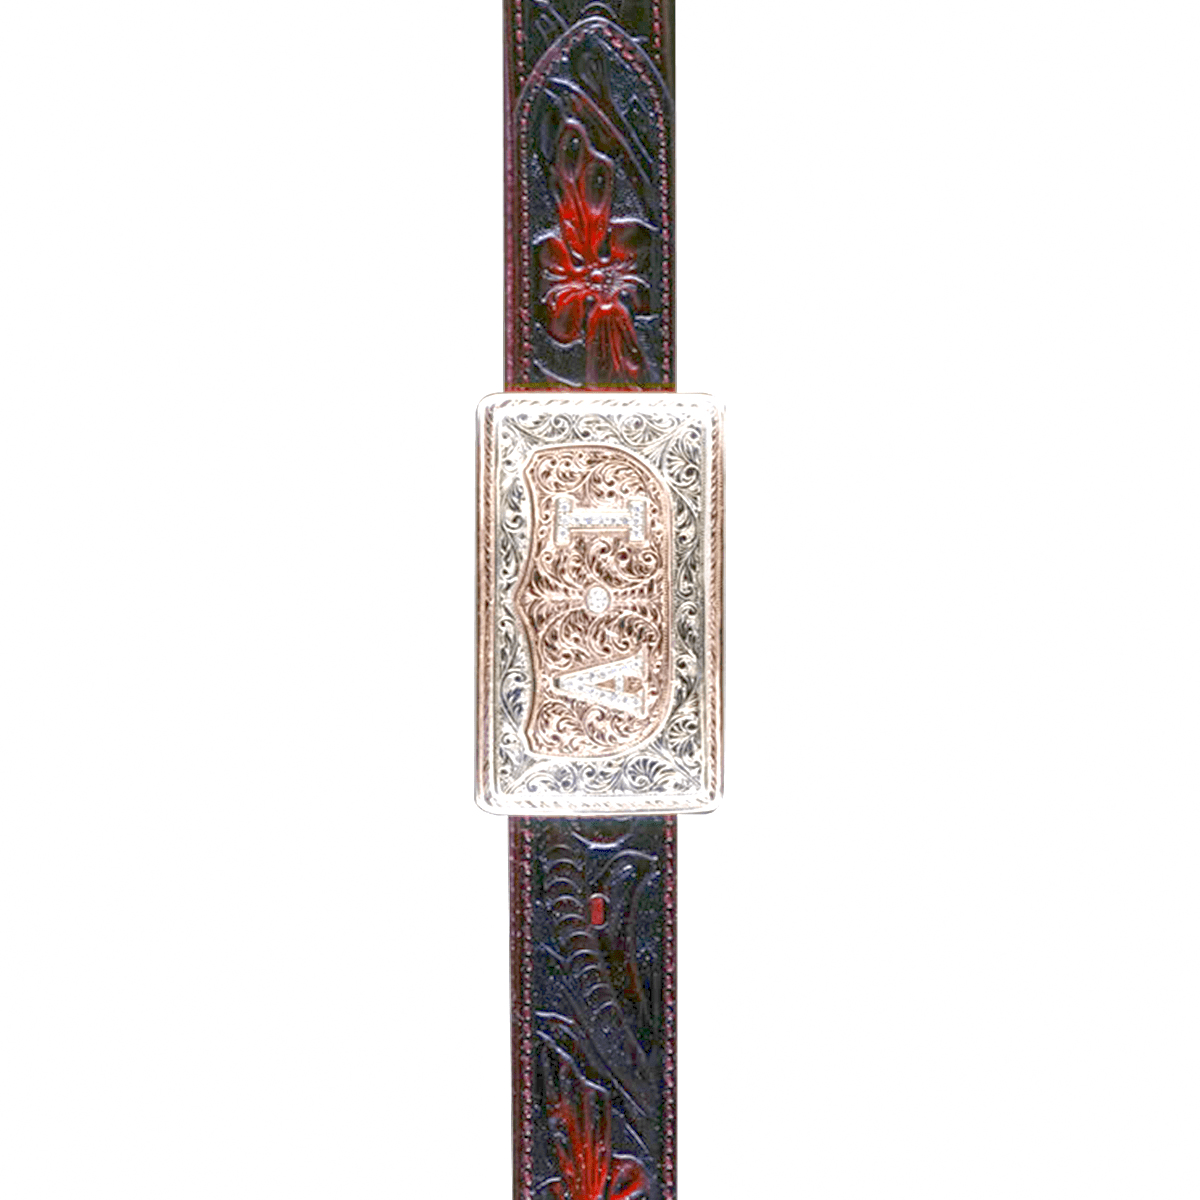 Ornate Belt Buckle - 18 Karat Gold Belt Buckle